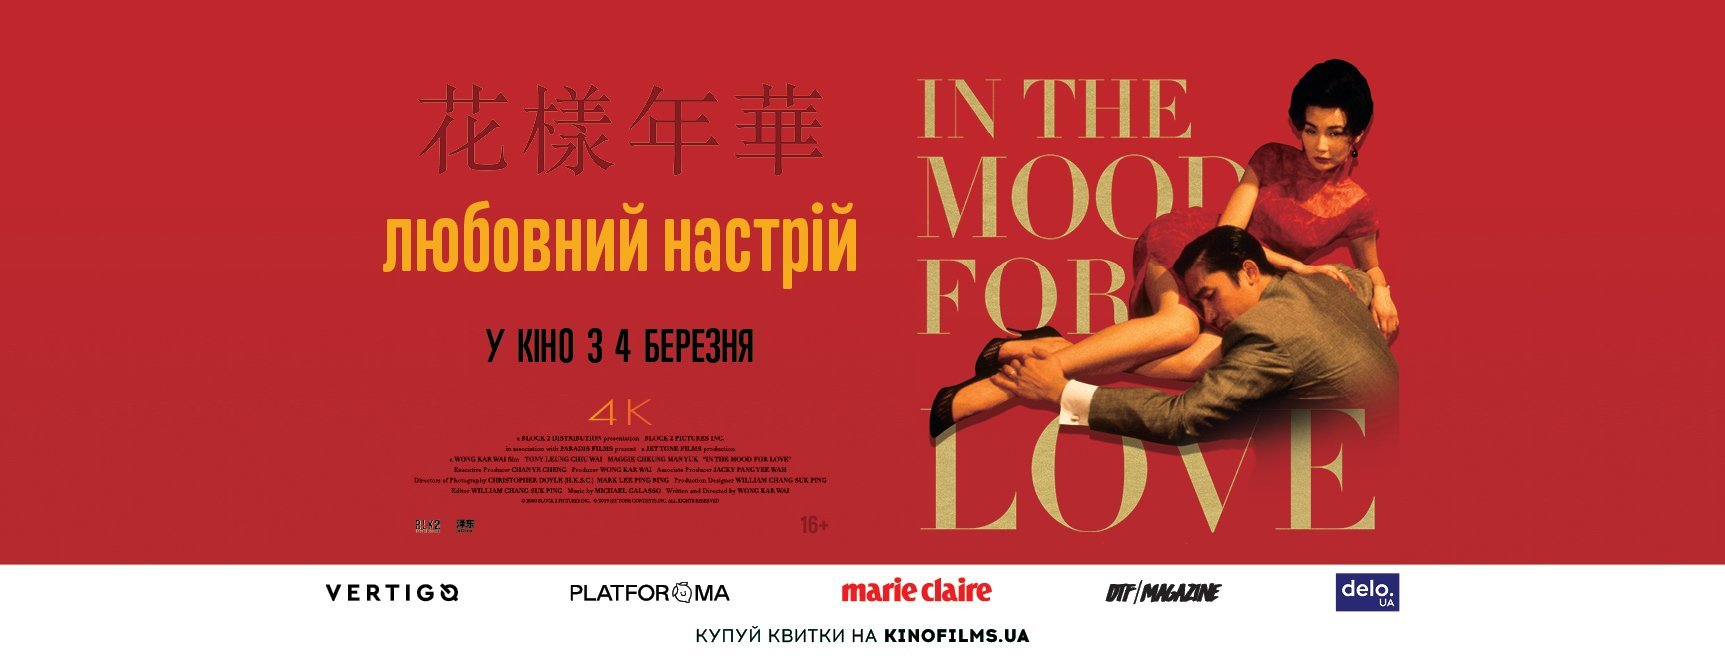 В украинском прокате покажут реставрацию кинохита Вонга Карвая “Любовное настроение”